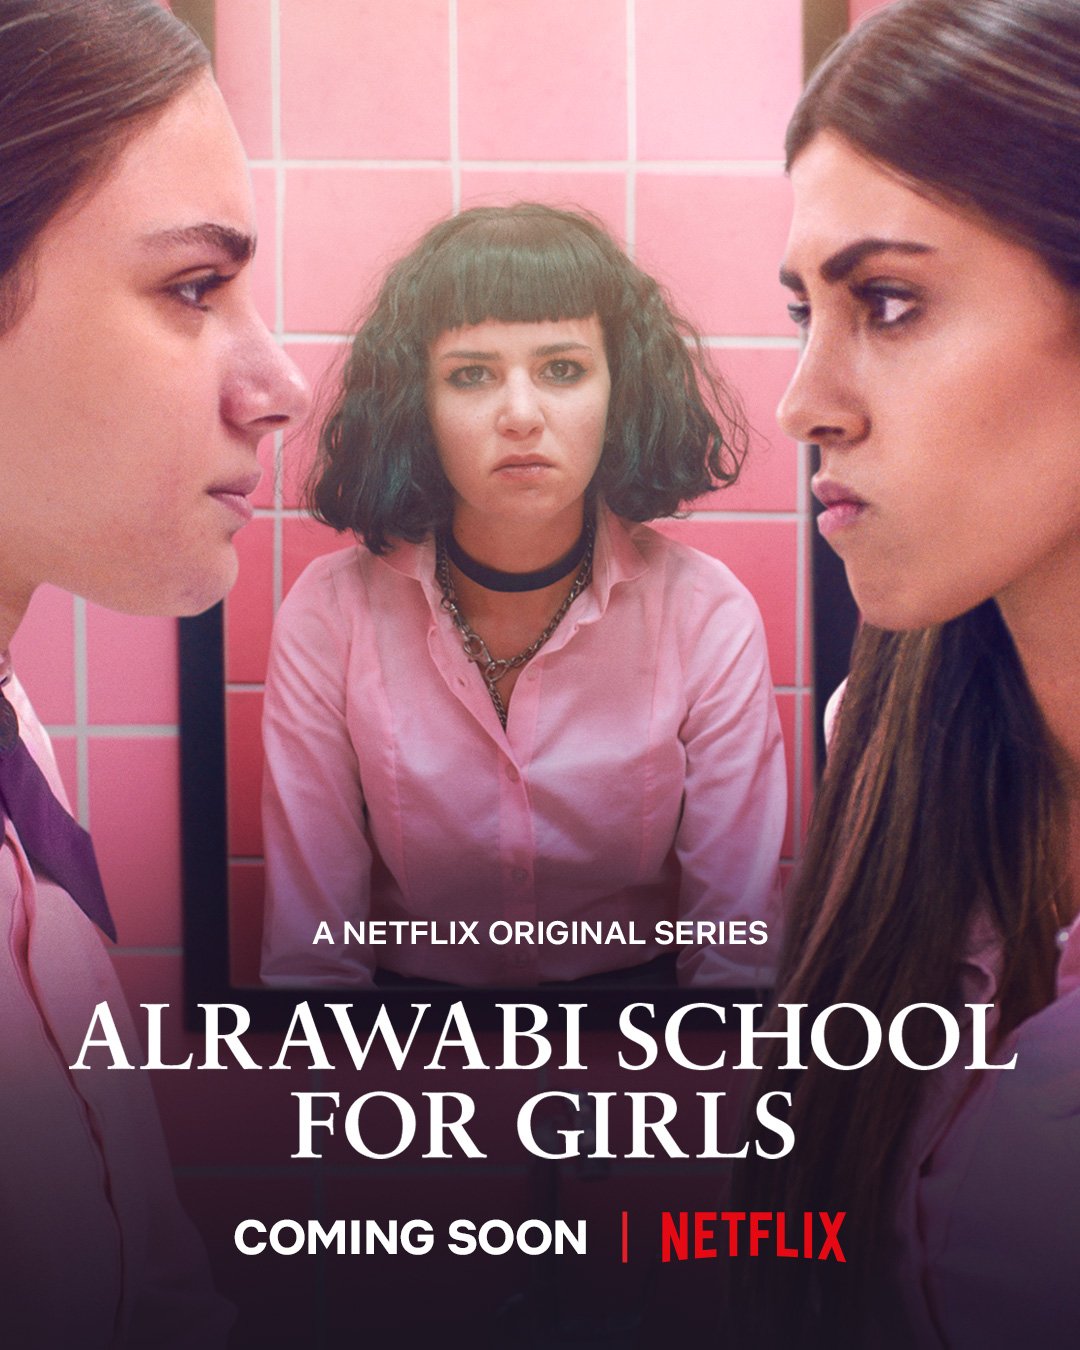 alrawabi-school-for-girls-2021-เด็กสาวหลังรั้วหญิงล้วน-ตอนที่-1-6-ซับไทย